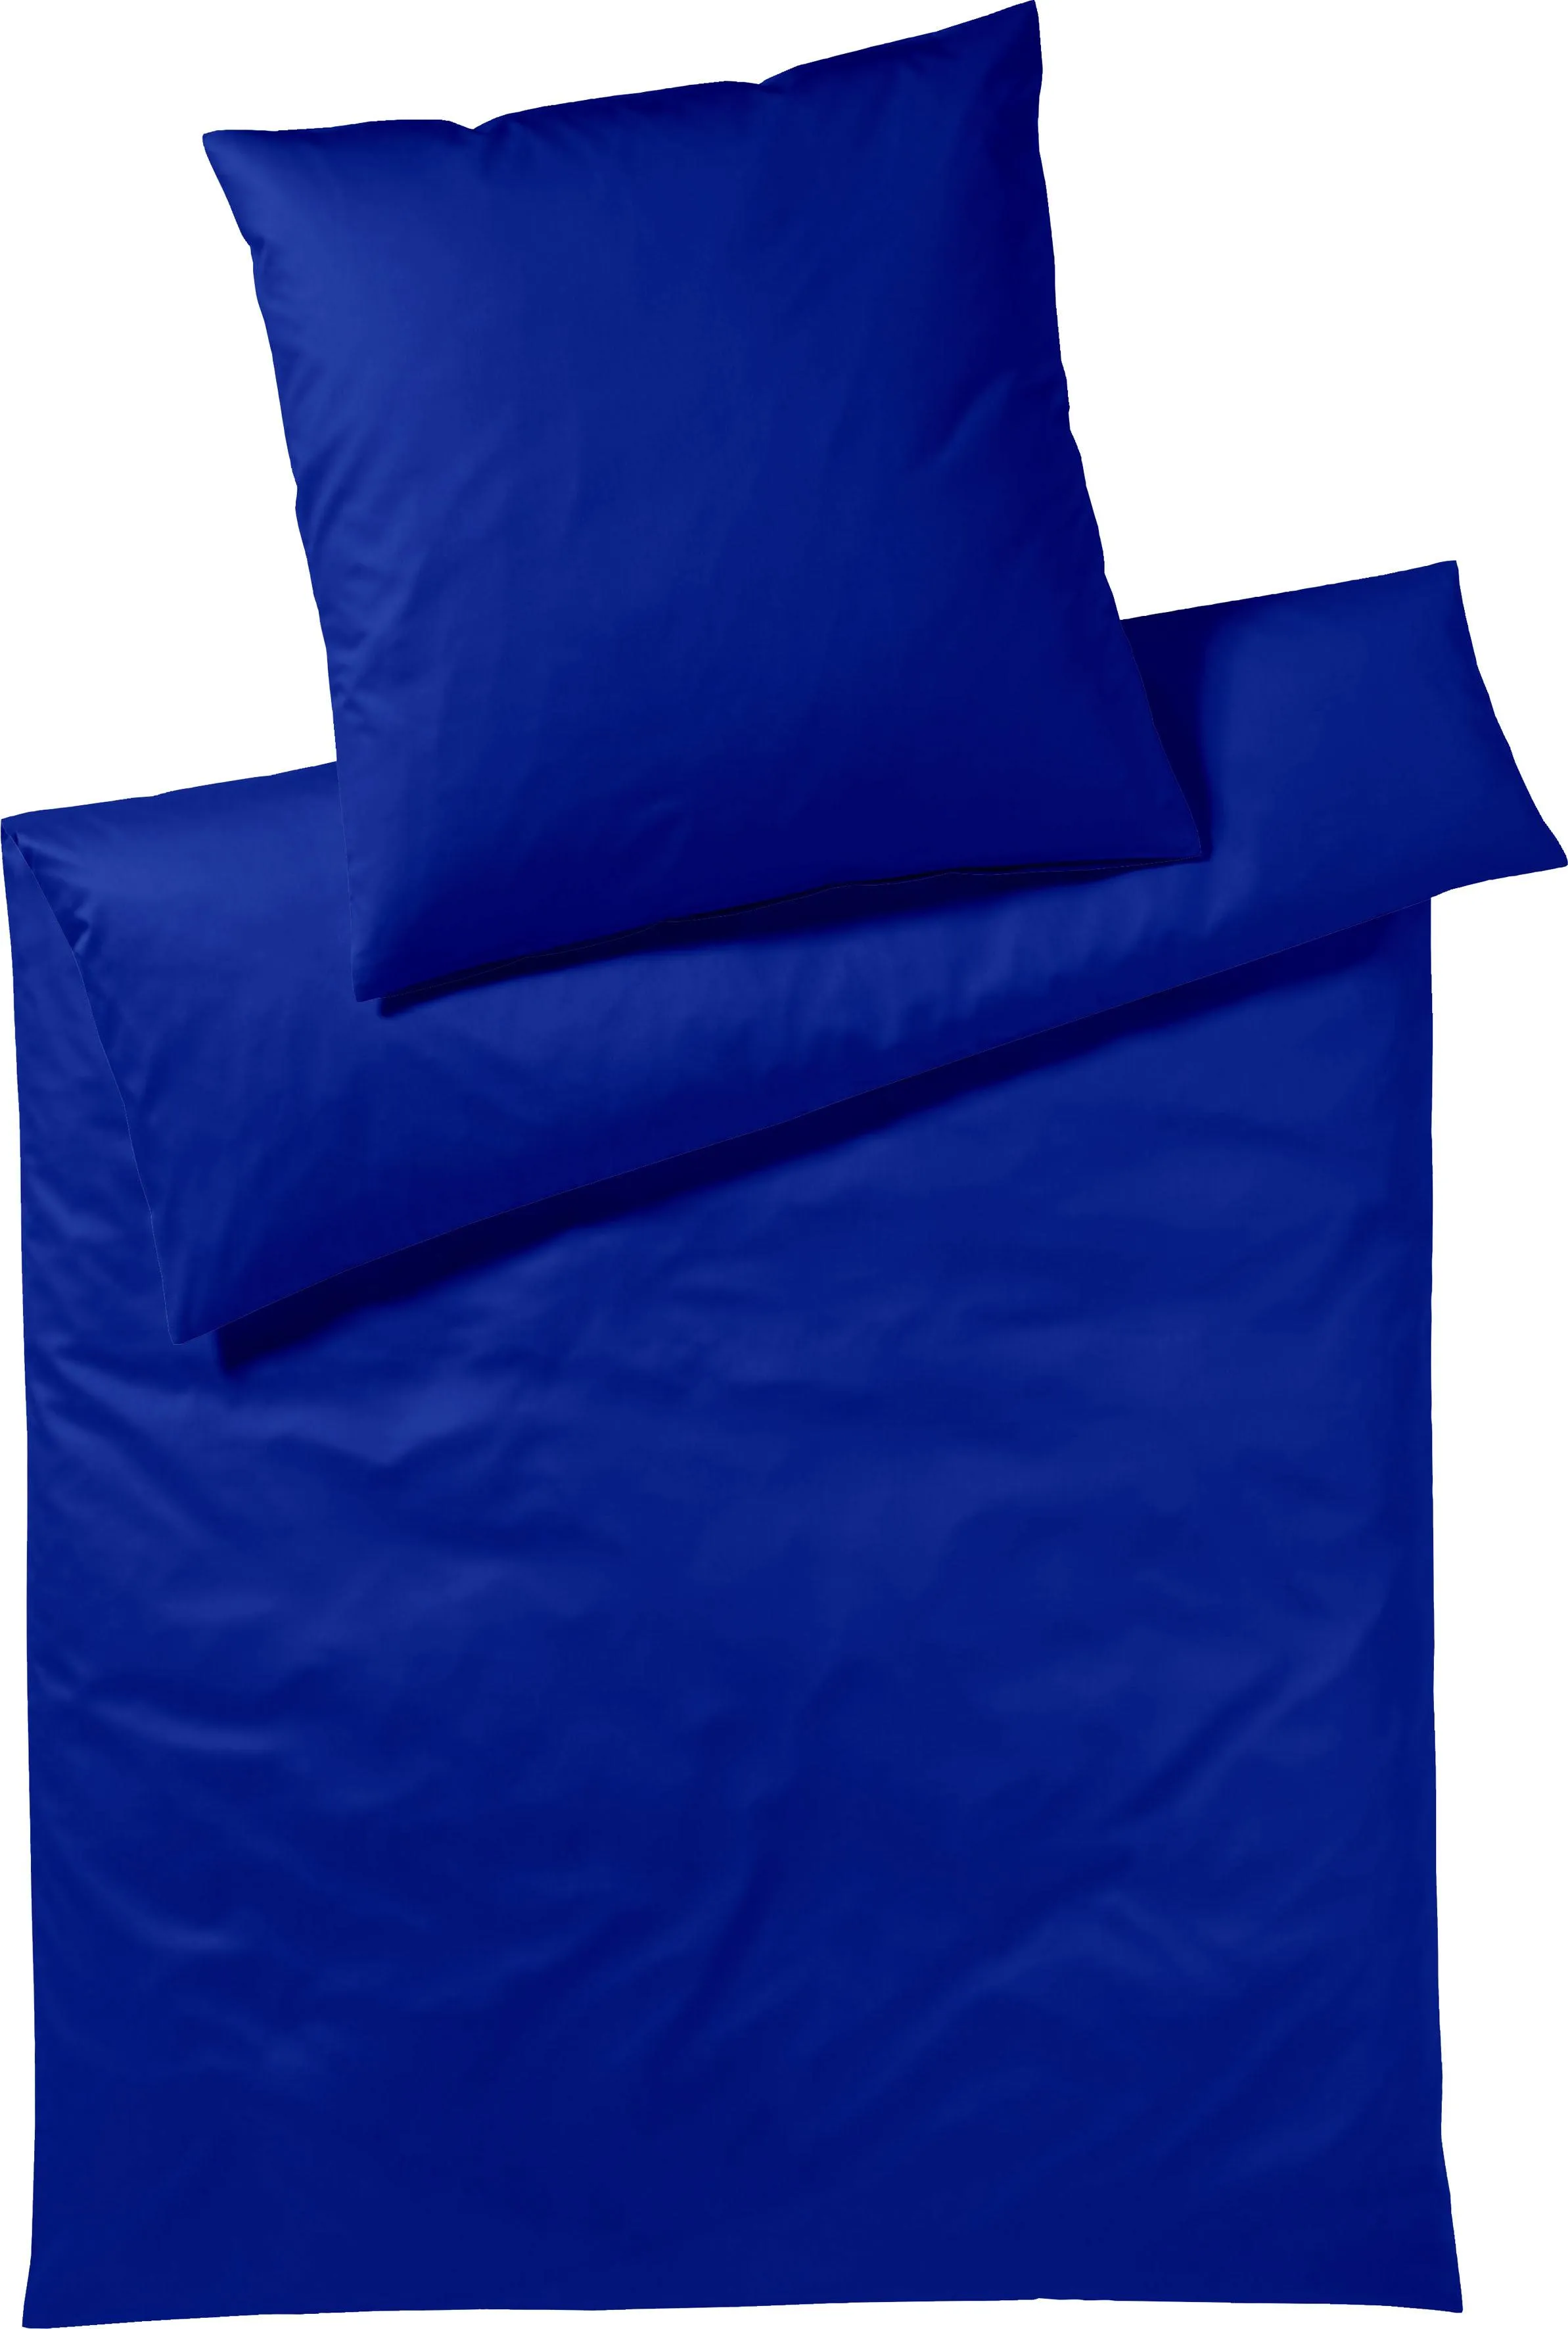 Bettwäsche YES FOR BED "Pure & Simple Uni in Gr. 135x200, 155x220 oder 200x200 cm" Gr. B/L: 200 cm x 200 cm (1 St.), B/L: 80 cm x 80 cm & 80 cm x 80 cm (2 St.), Mako-Satin, blau (royal) Bettwäsche 200x200 cm aus Baumwolle, zeitlose mit seidigem Glanz